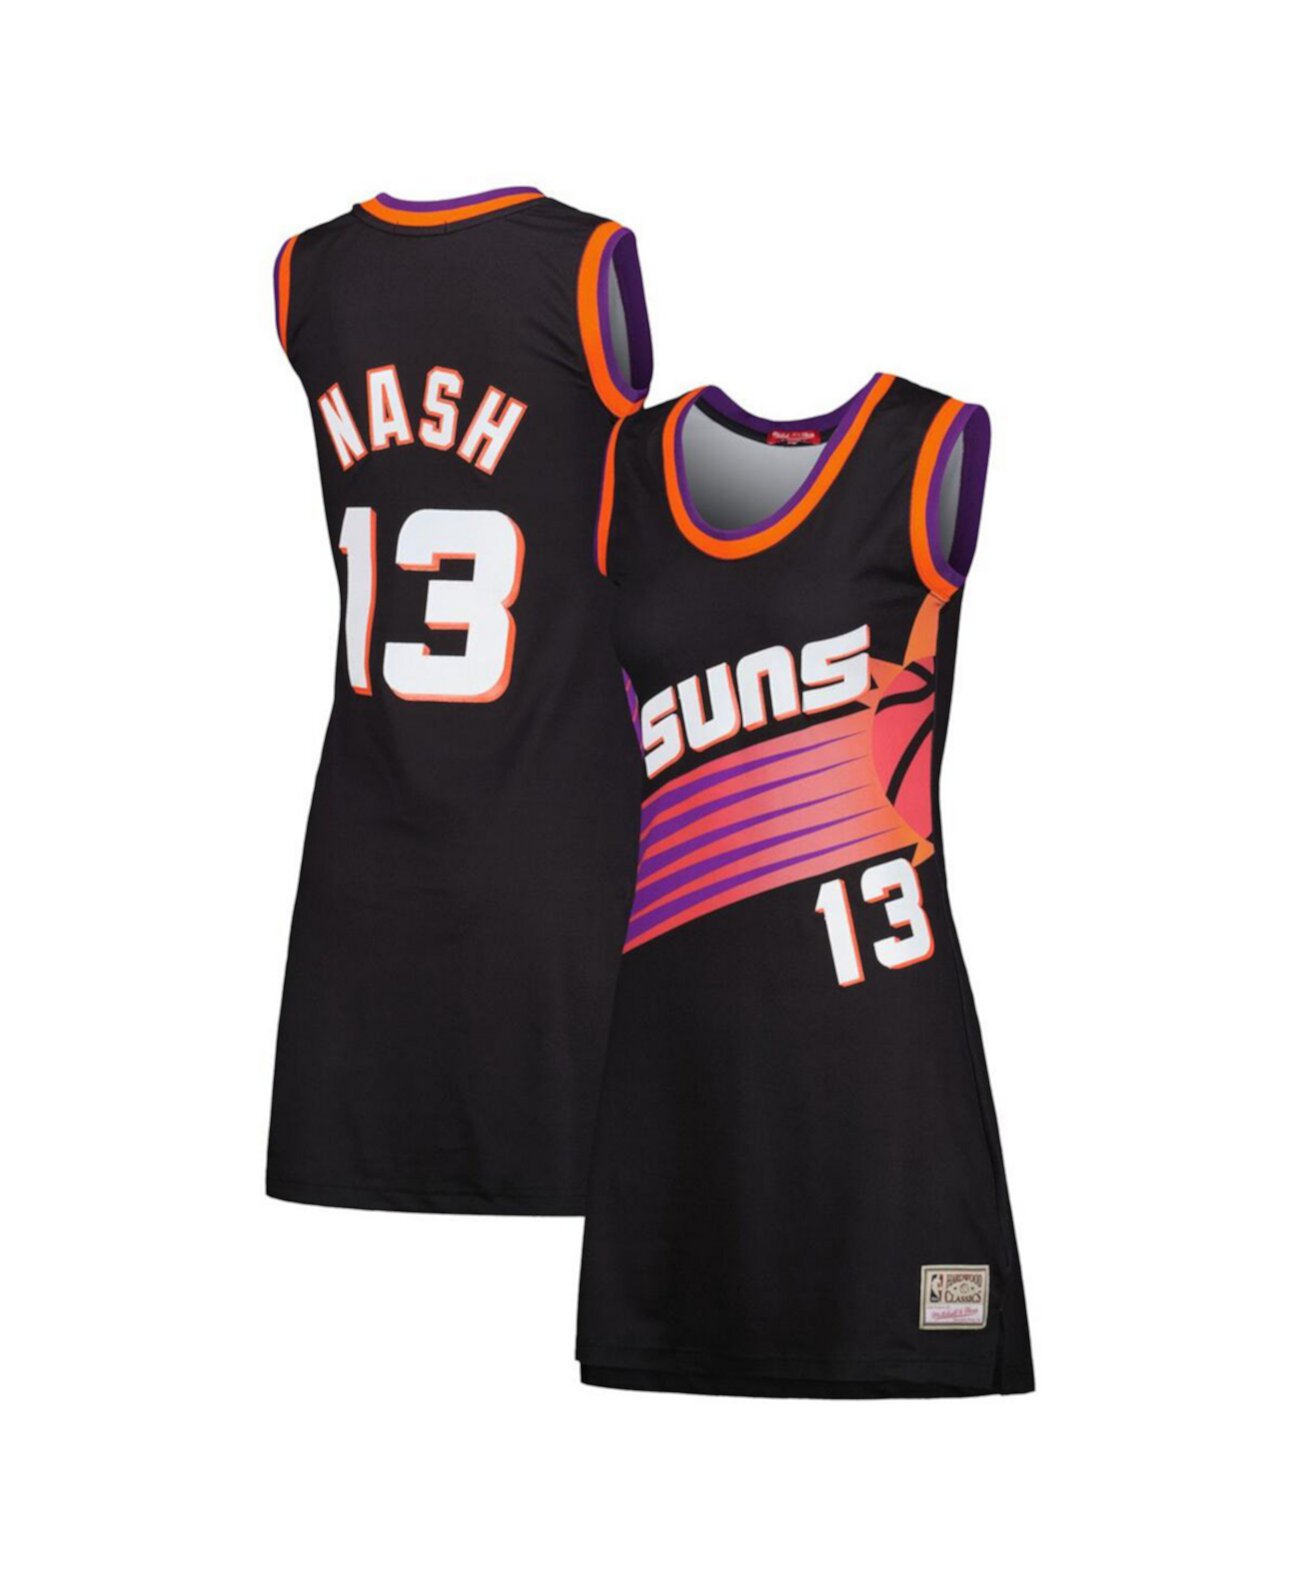 Женское трикотажное платье Steve Nash Black Phoenix Suns 1996 года из твердой древесины с именем и номером игрока Mitchell & Ness